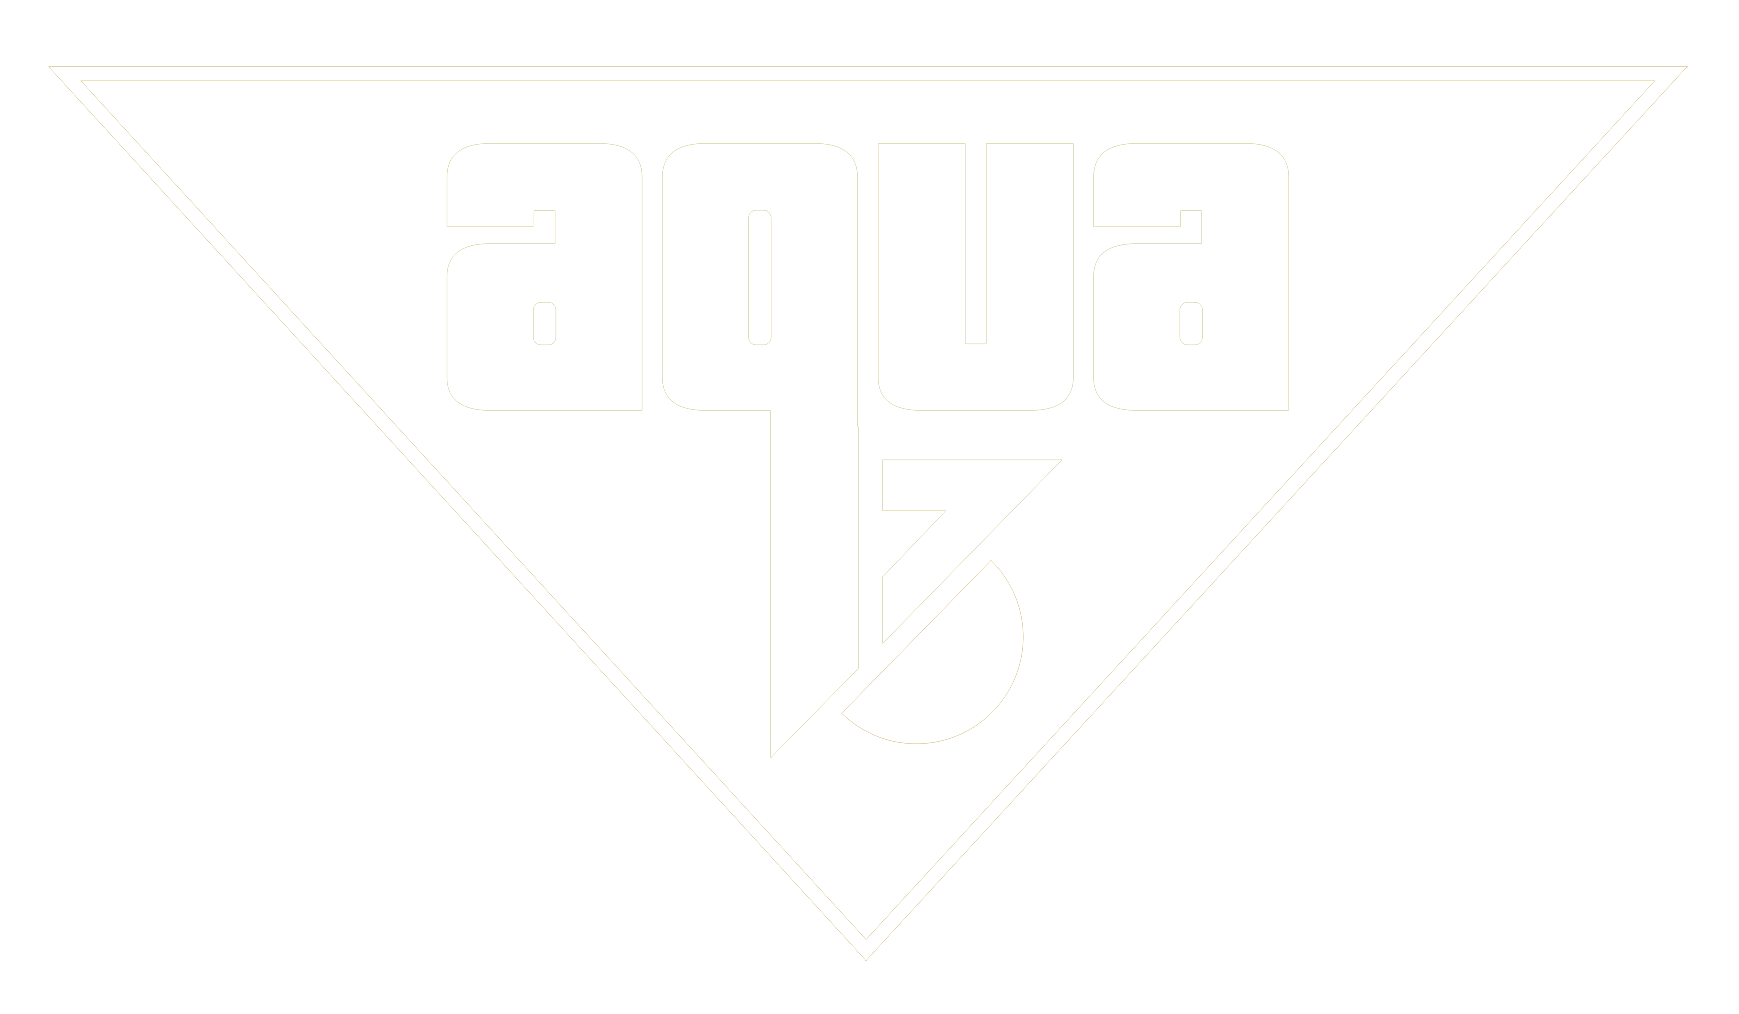 Aqua3